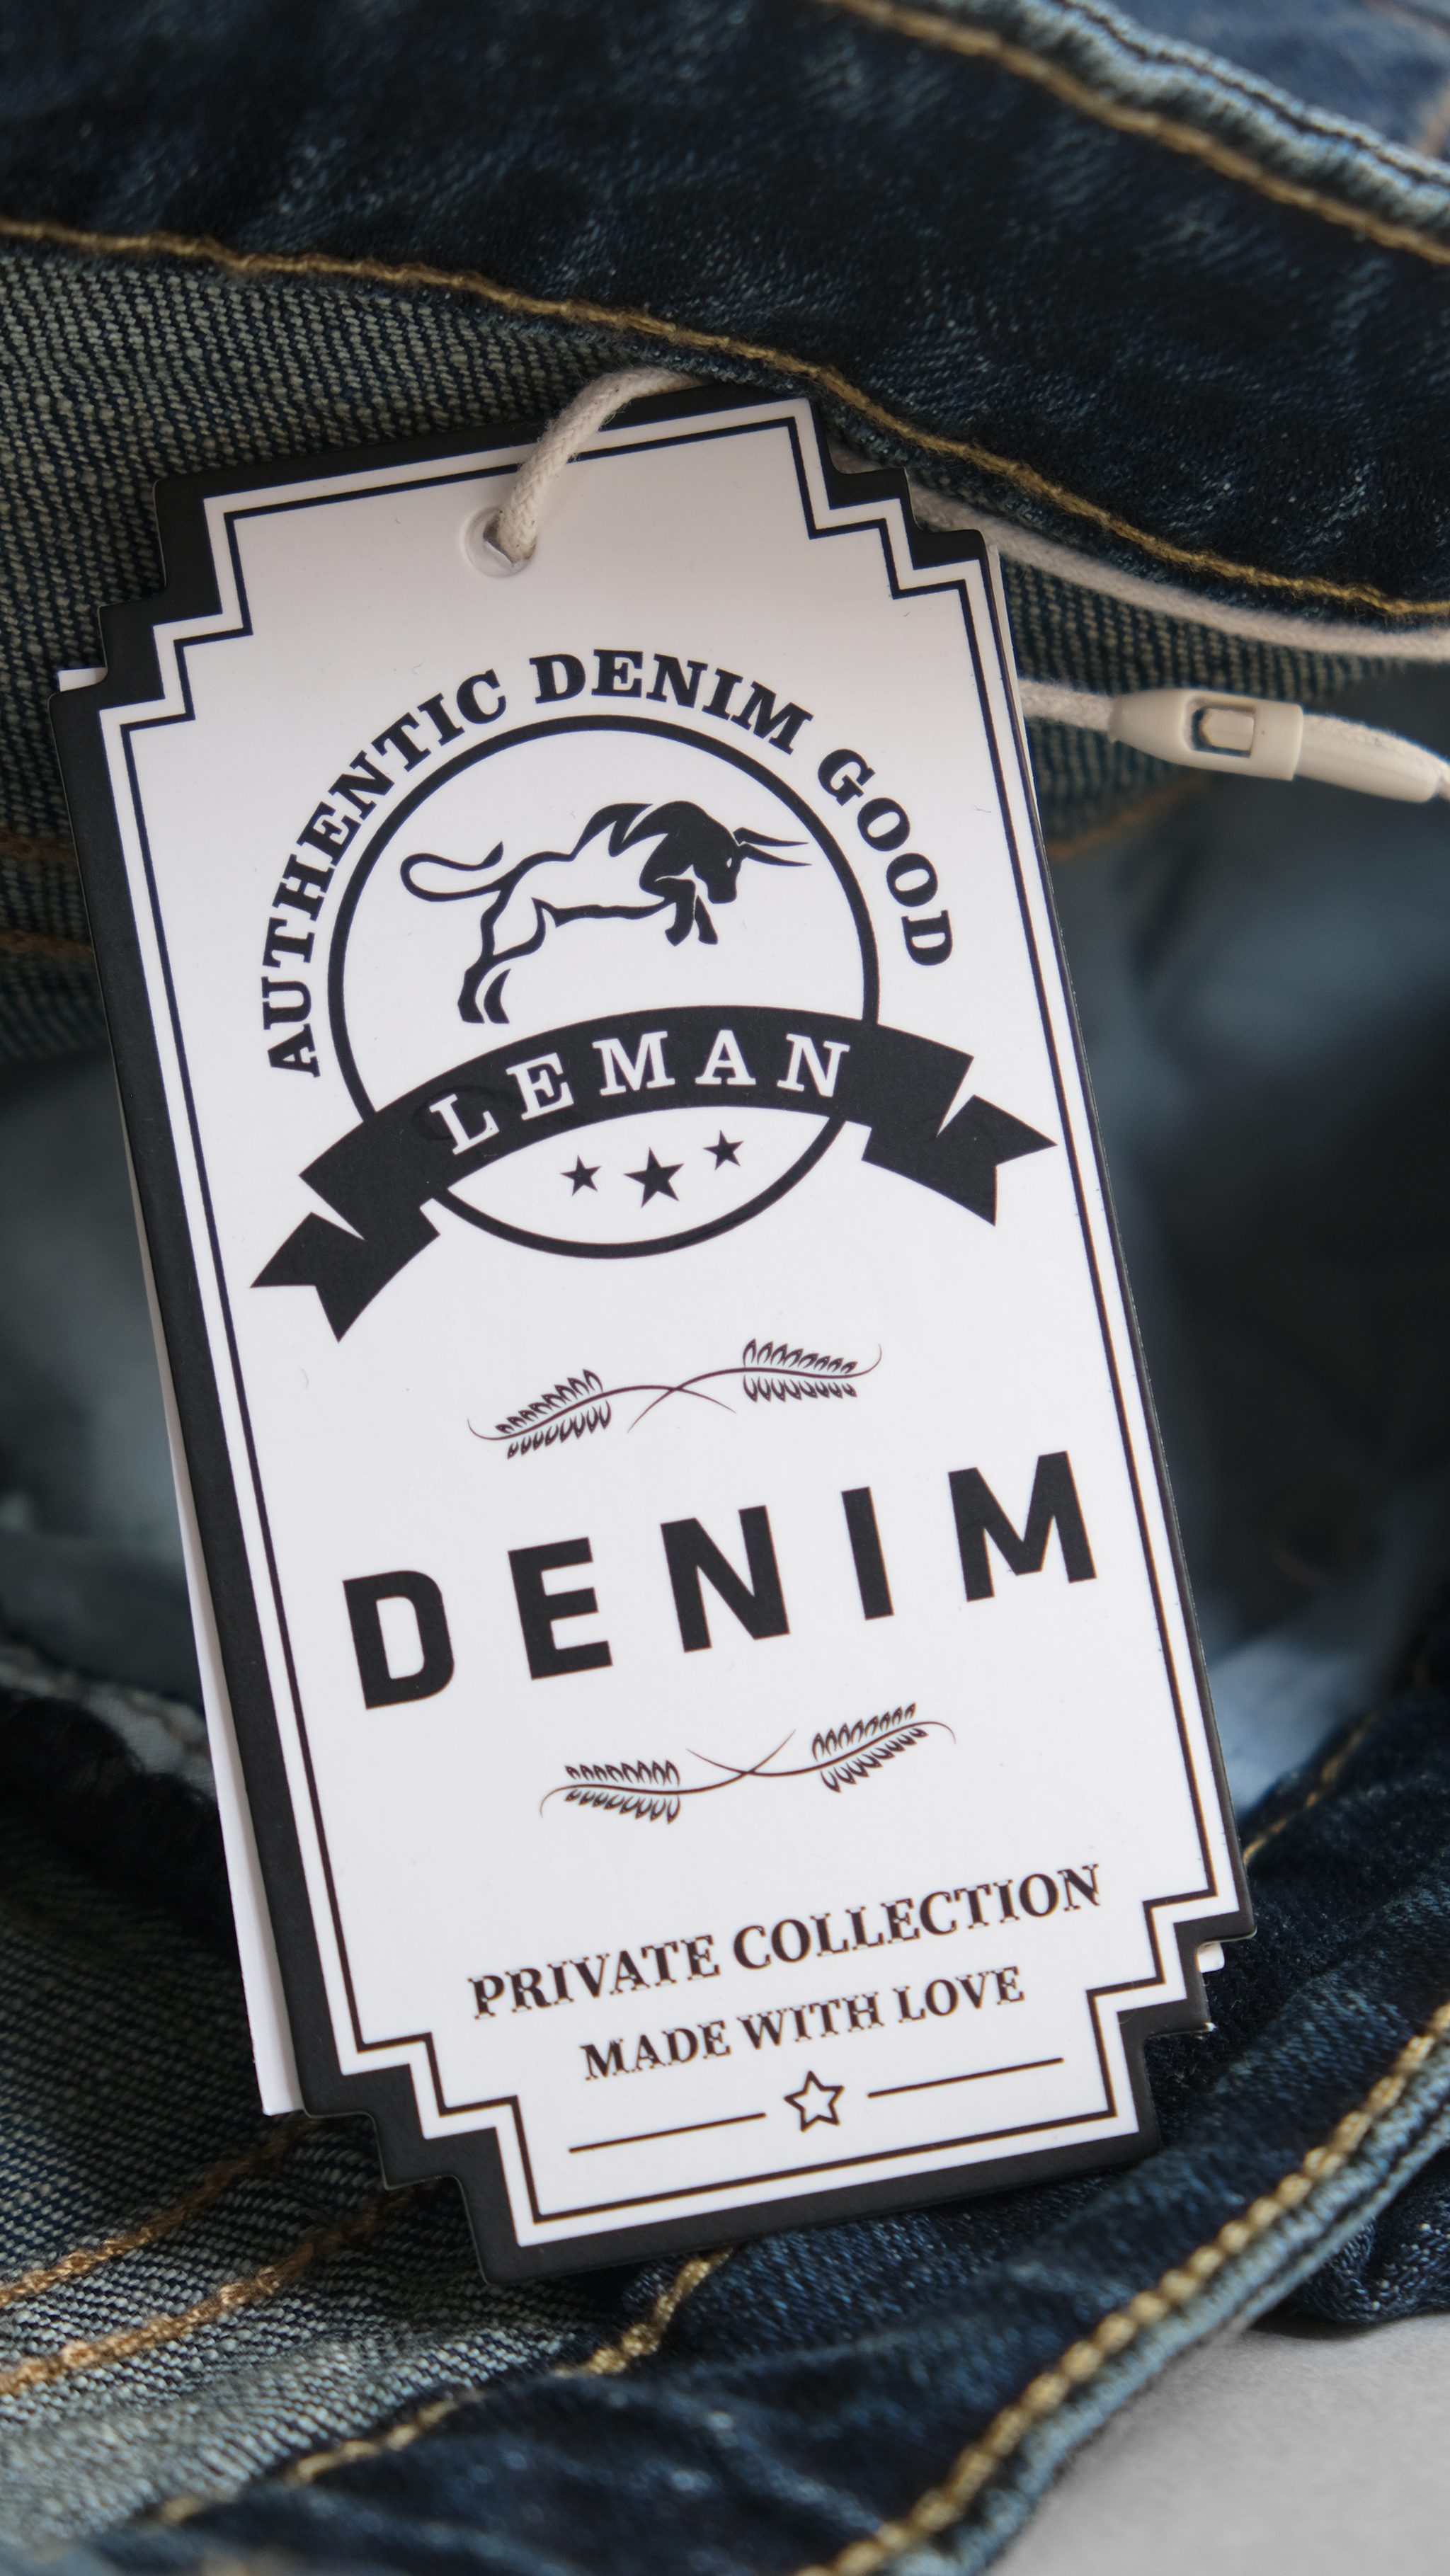 Quần Jean nam Leman xanh rách JD06 - Slim Form